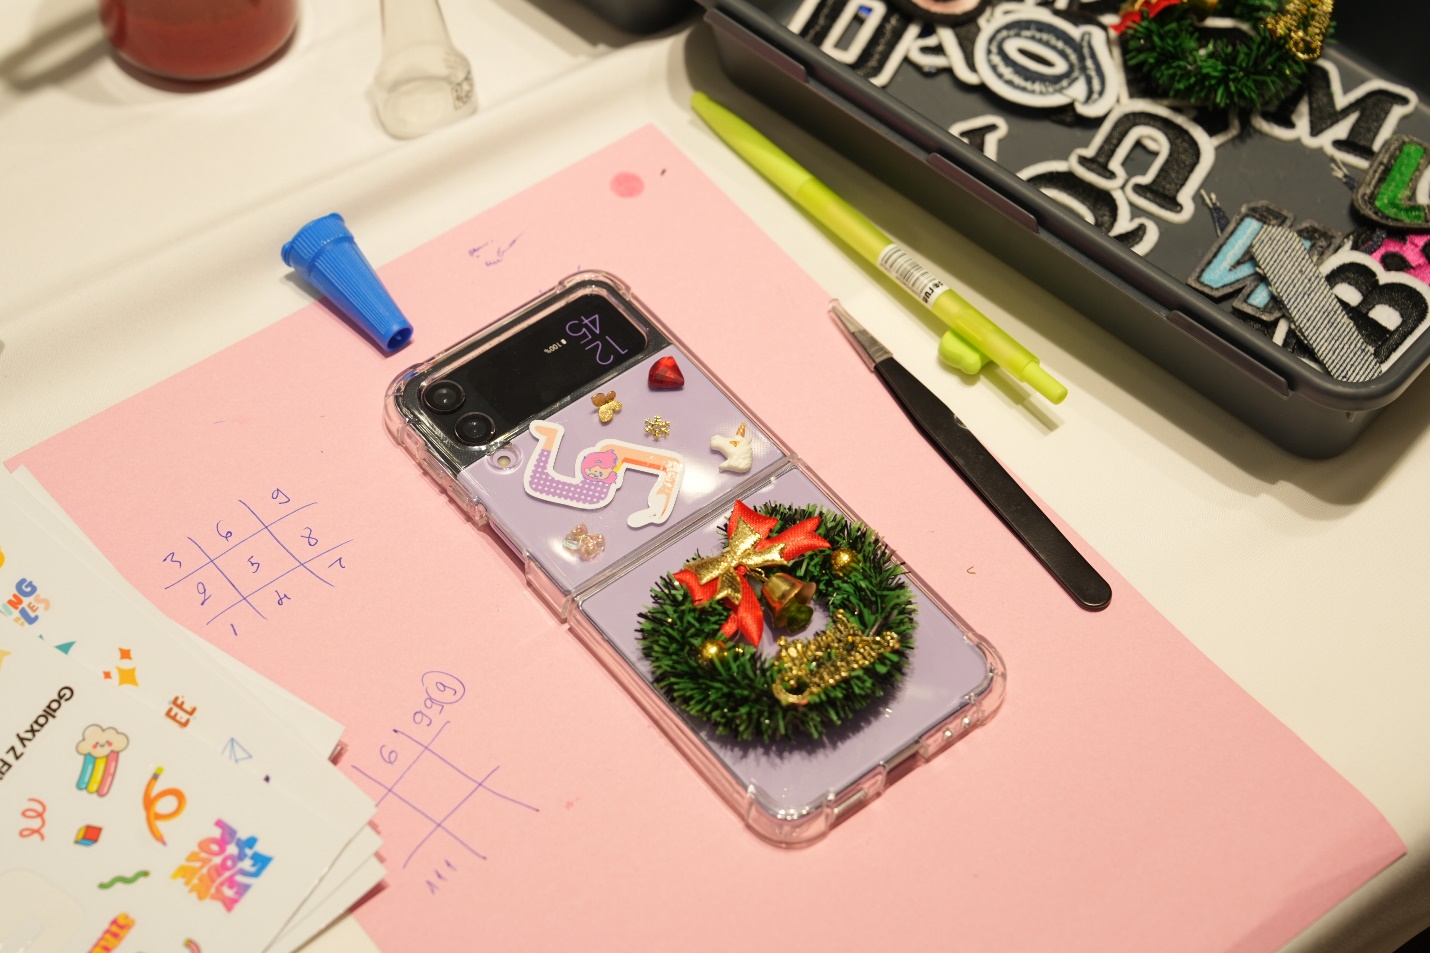 Giới trẻ Hà thành mê mẩn không gian “Cá nhân hóa cùng Galaxy”, thỏa sức sáng tạo phụ kiện tại cửa hàng trải nghiệm Samsung - Ảnh 5.